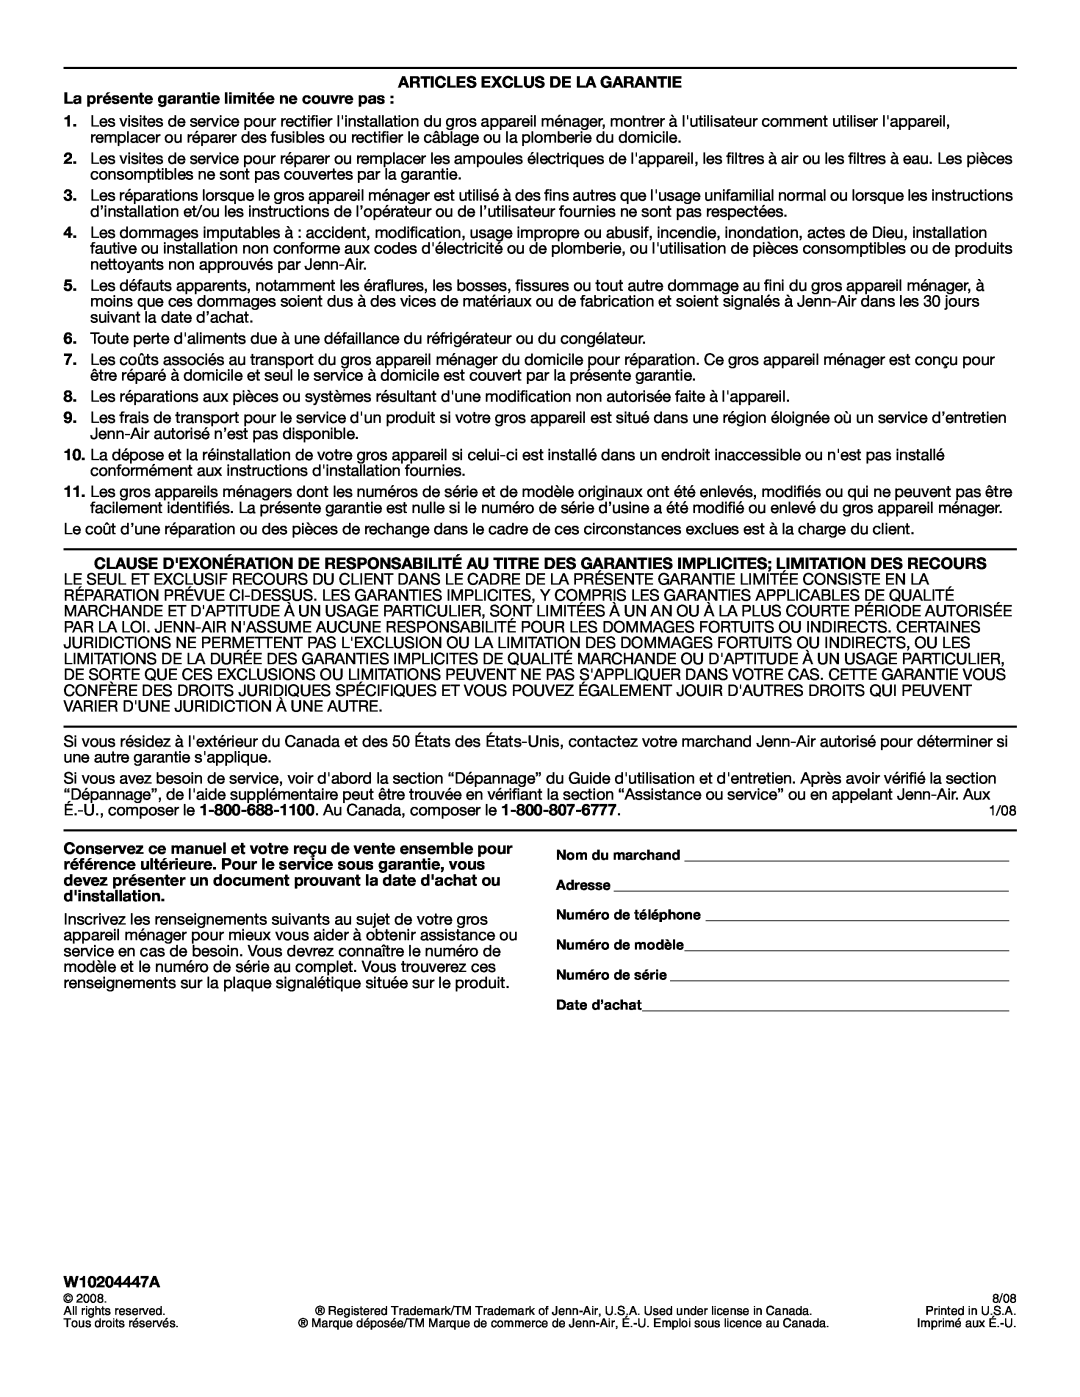 Jenn-Air W10204447A manual Articles Exclus De La Garantie, La présente garantie limitée ne couvre pas 